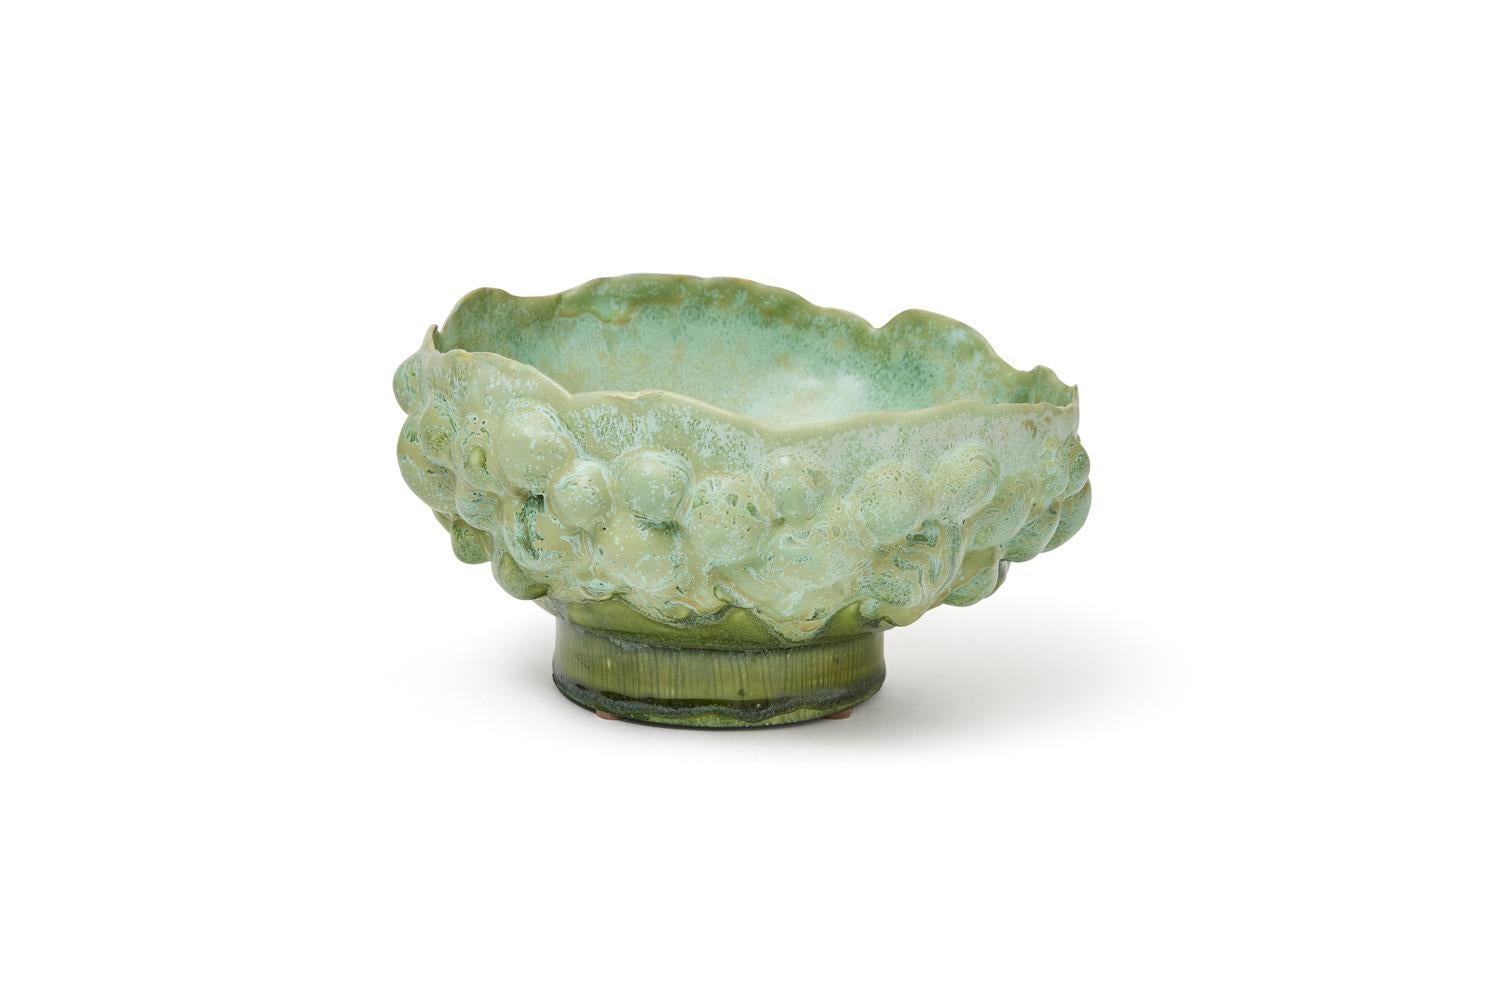 Trish DeMasi
Spora bowl, 2021
Glazed ceramic
Measures: 4.5 x 8.5 x 8.5 in.